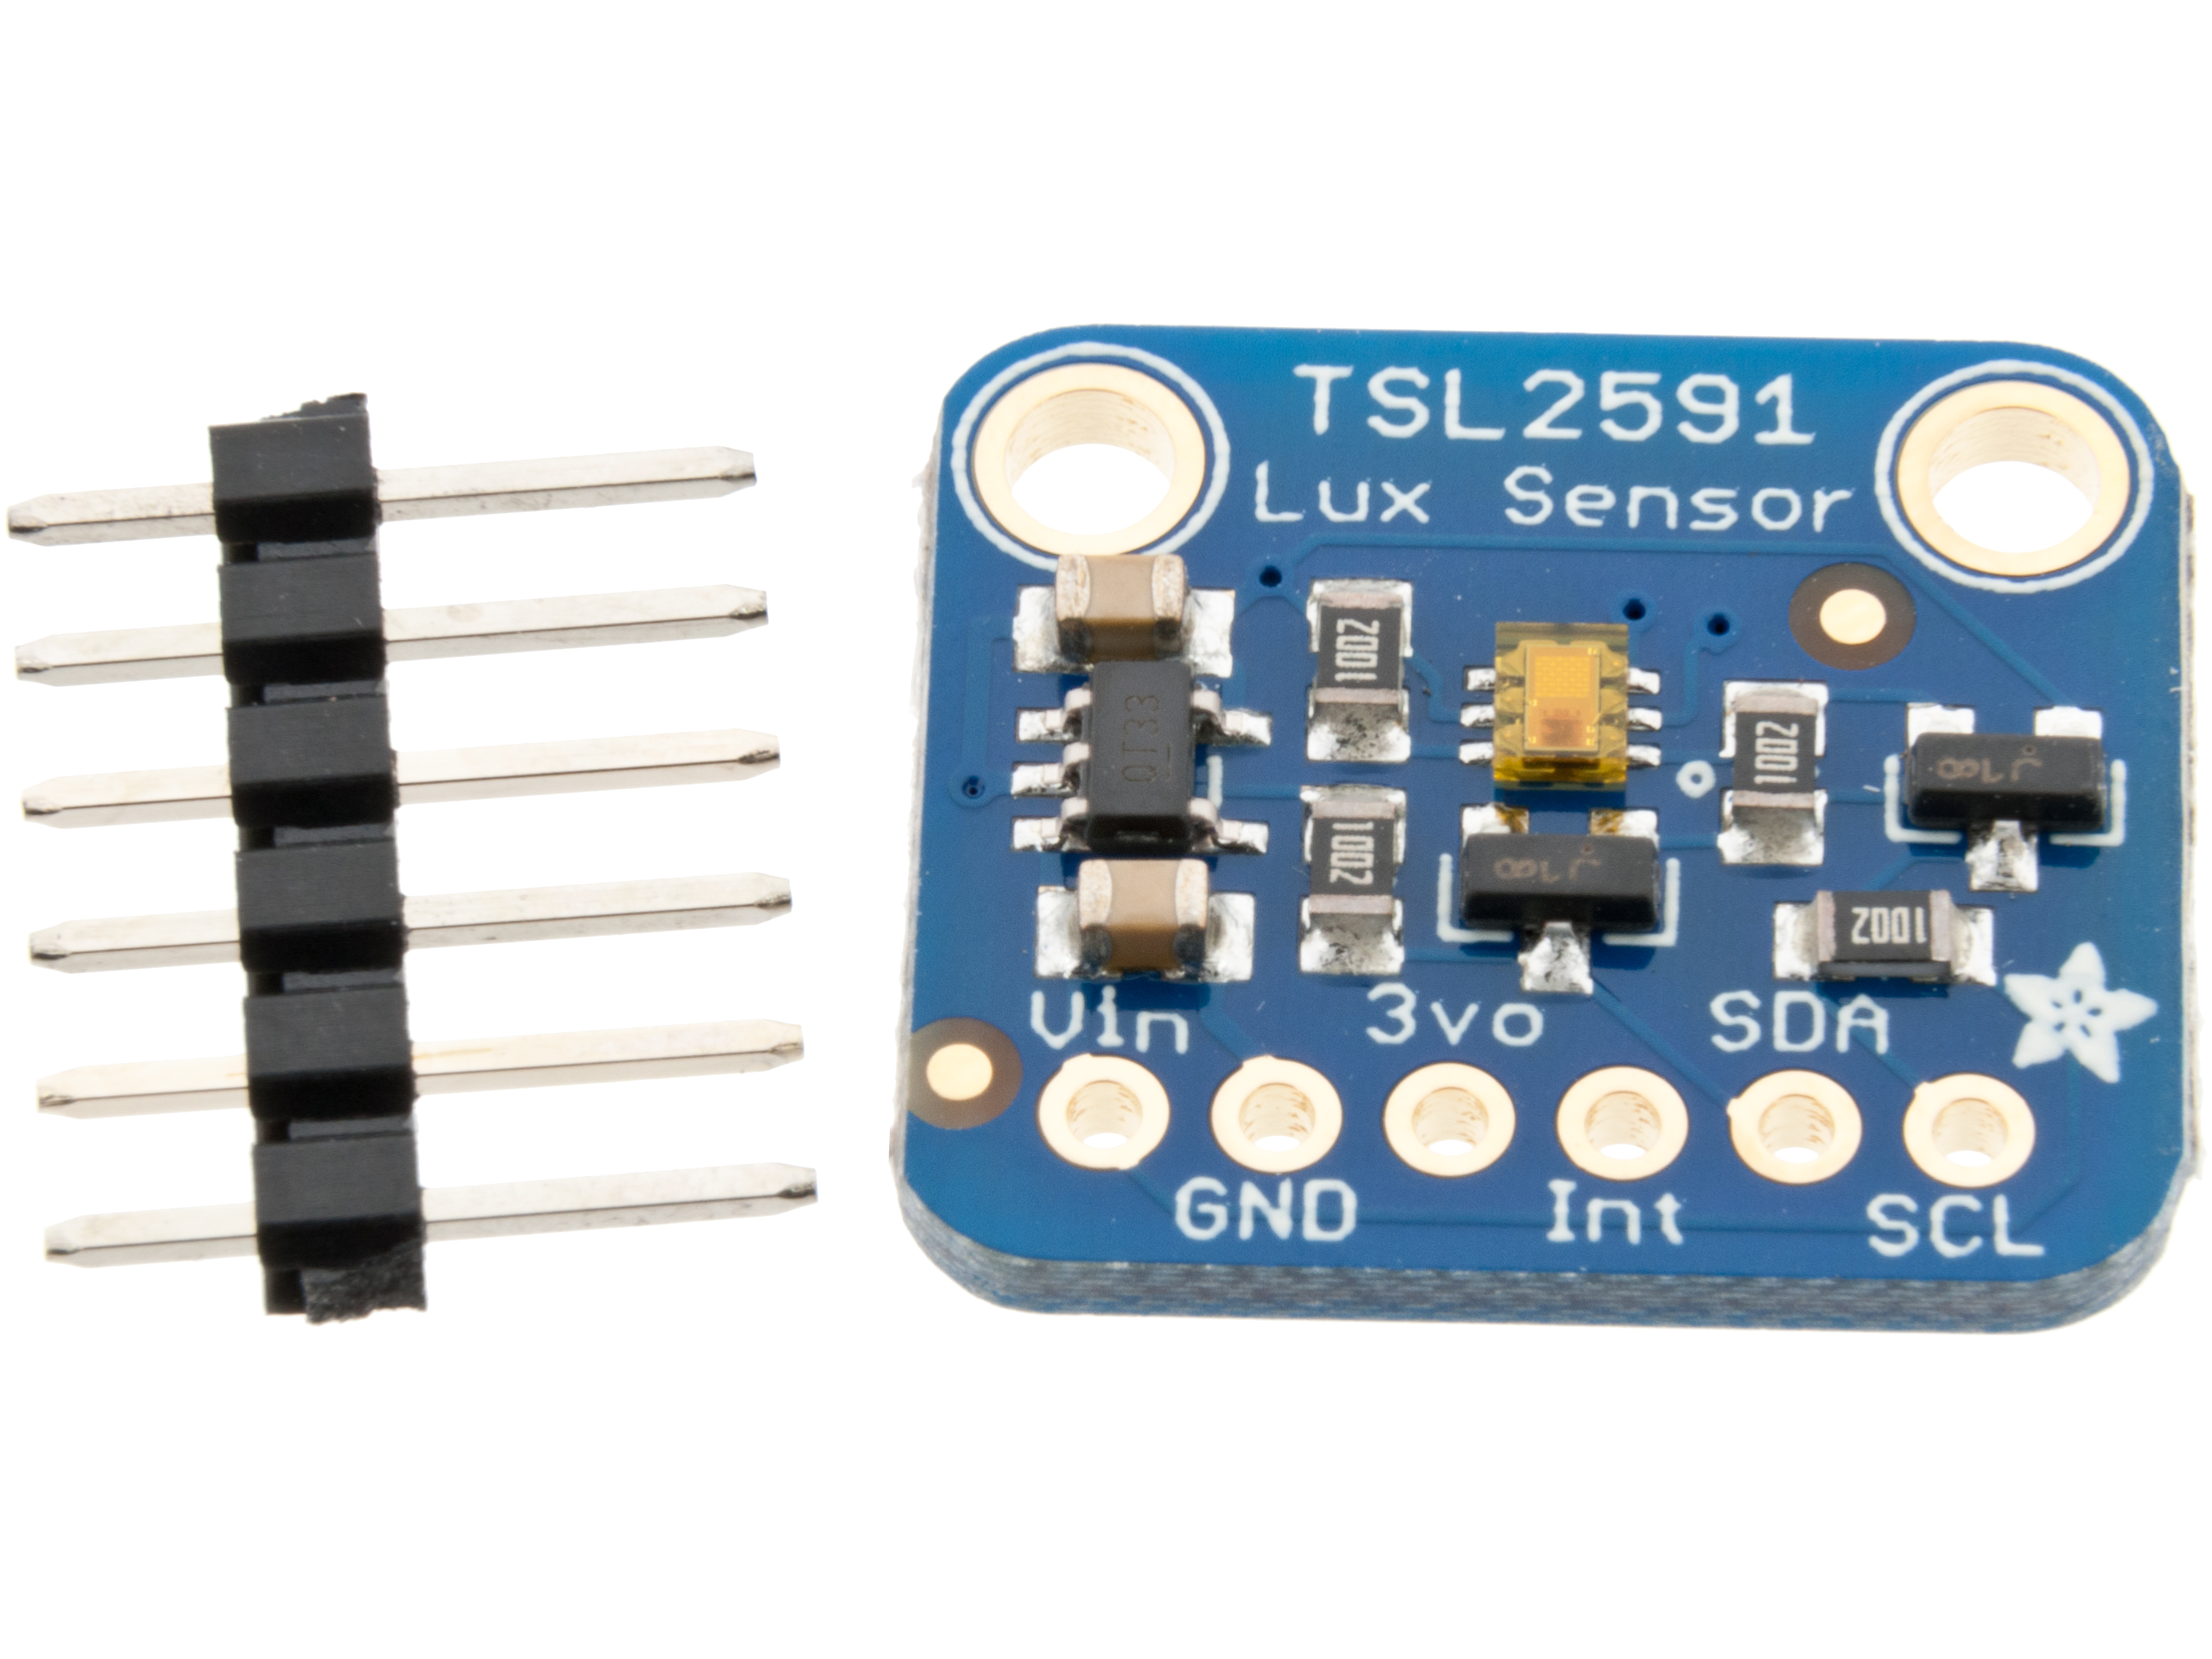 TSL2591 Digital ljussensor monterad på kort @ electrokit